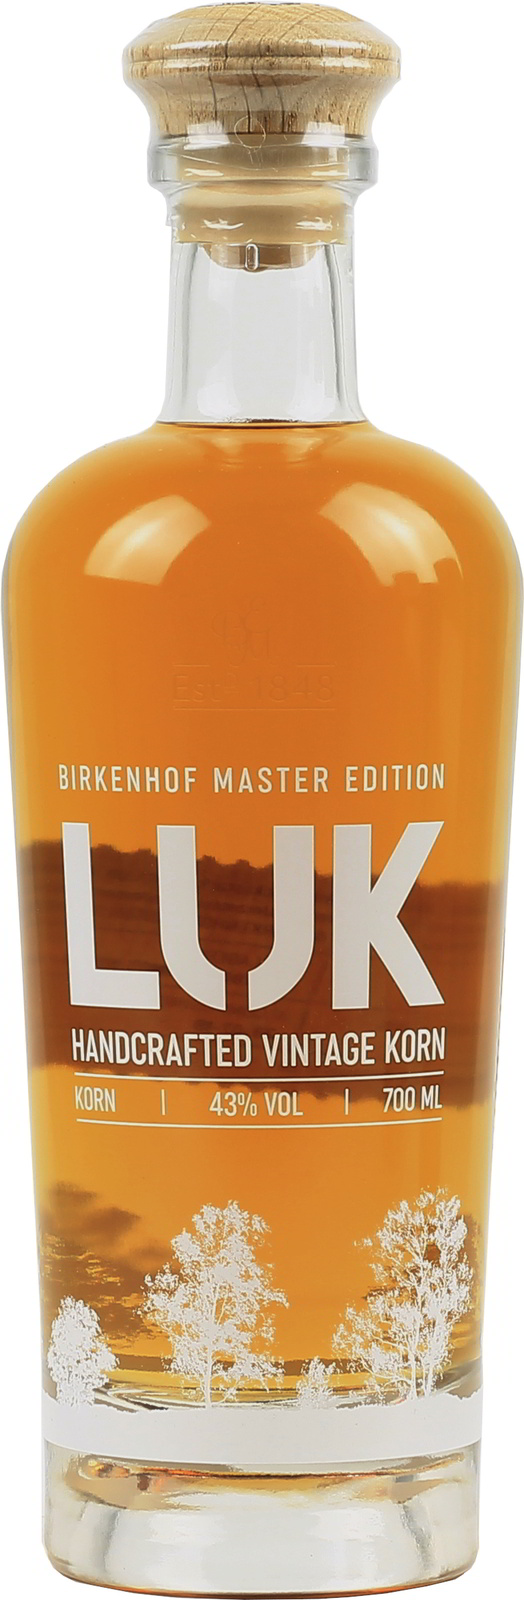 Birkenhof LUK exquisit Handcrafted Korn, Vintage